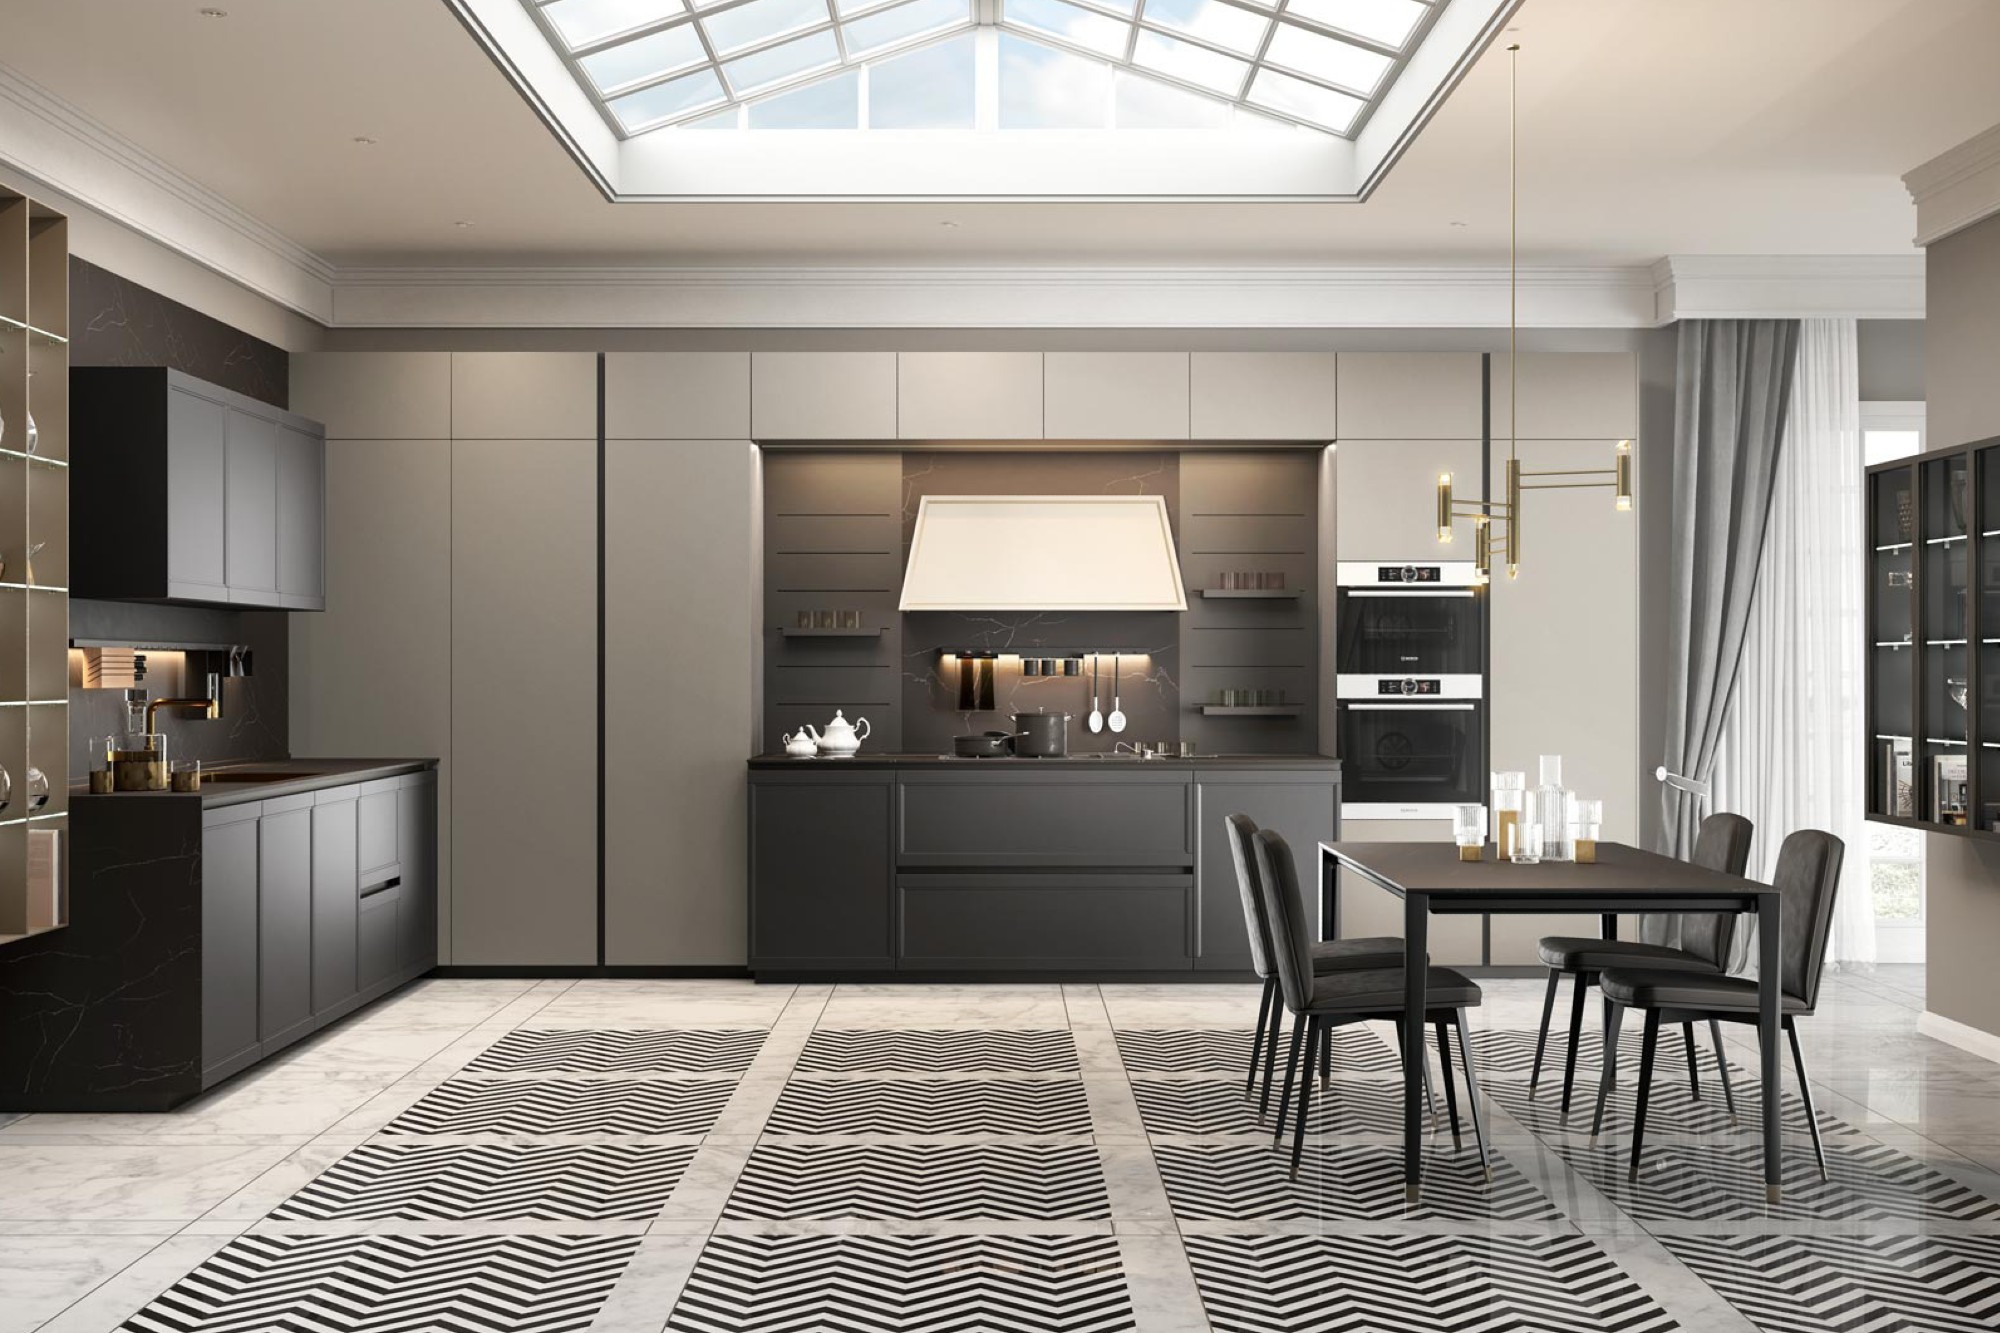 Etreluxe introduces modern kitchen designs